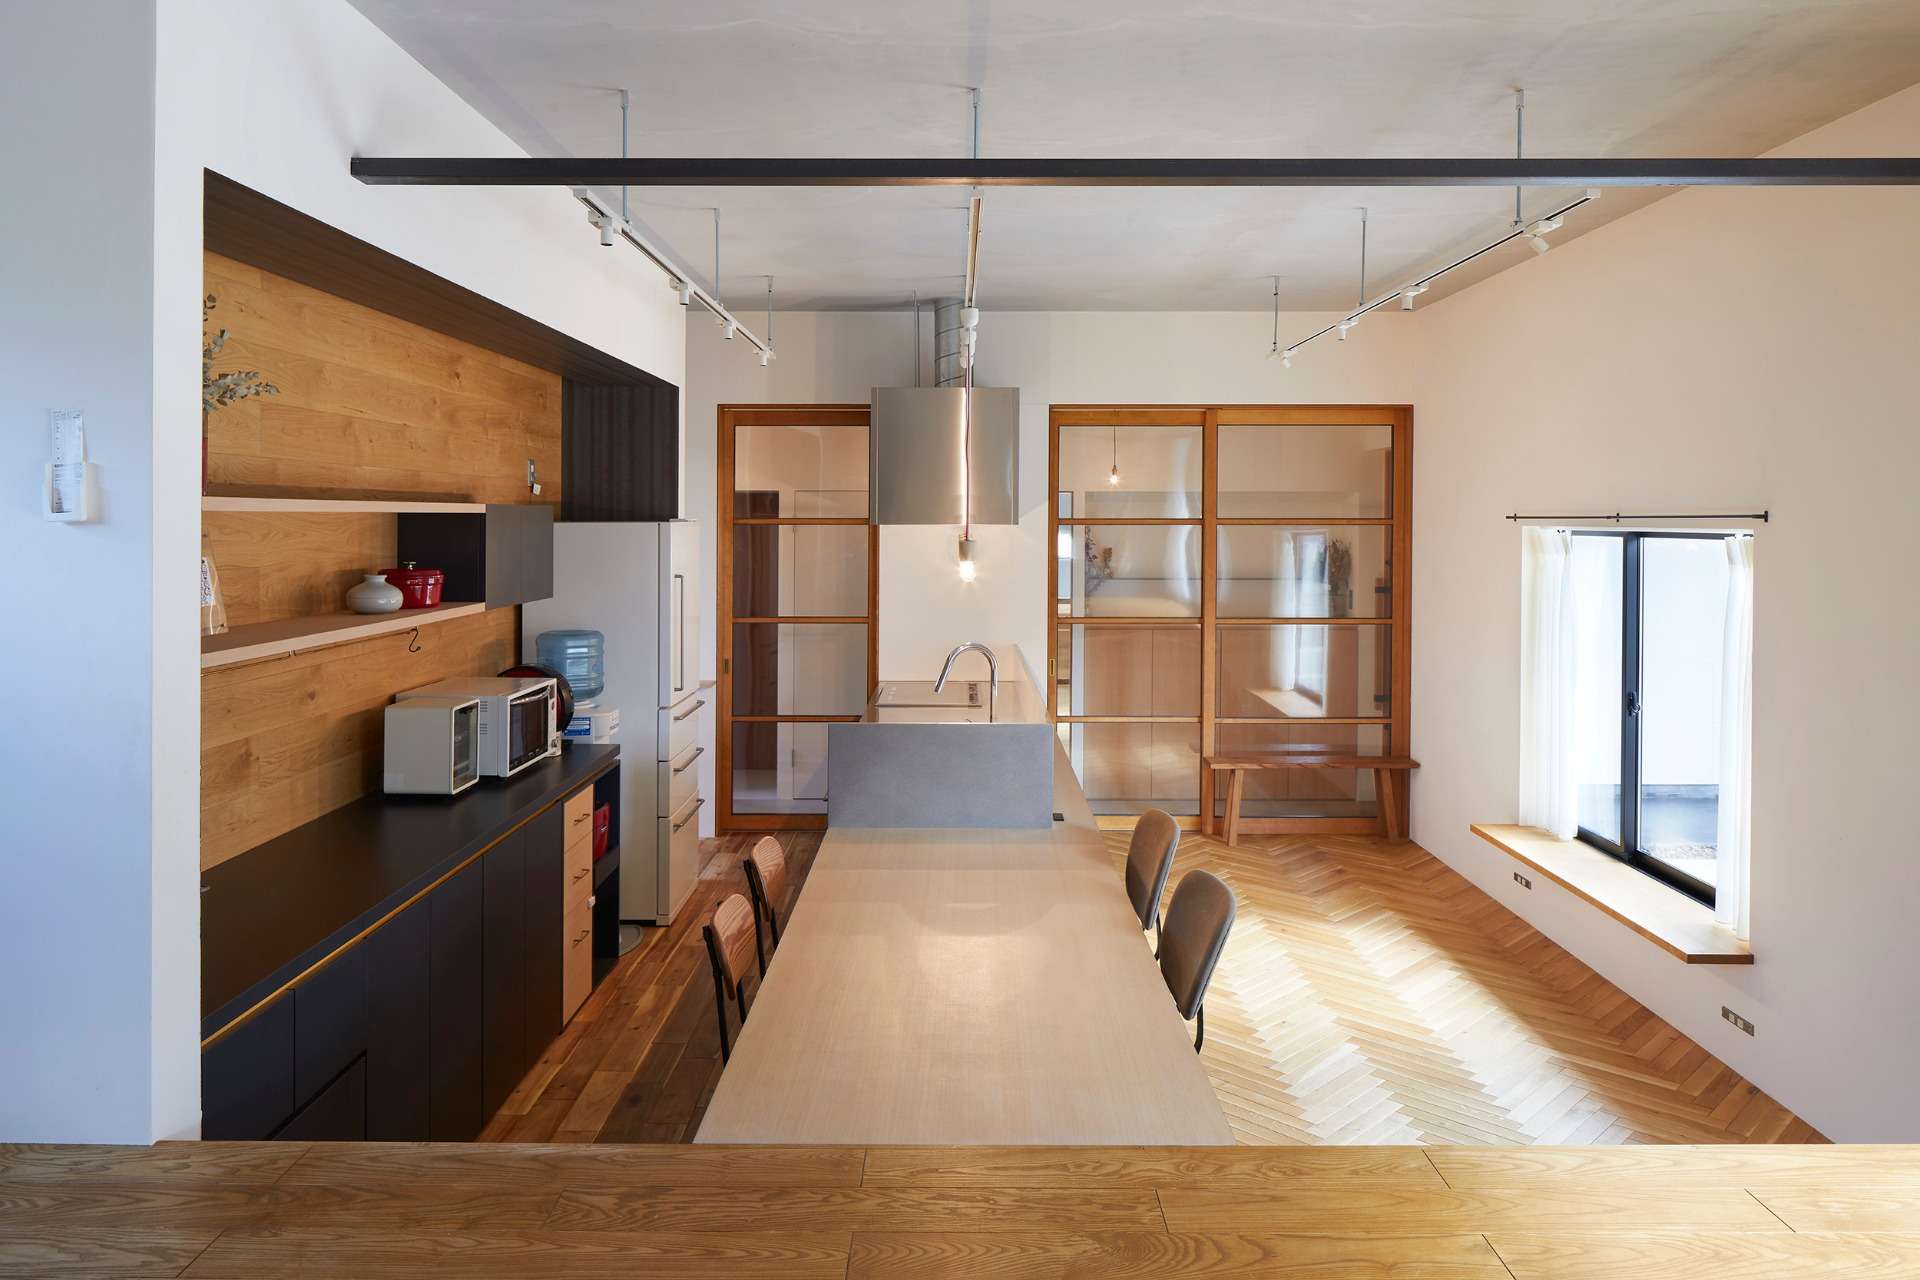 おしゃれな注文住宅のキッチンや家具もオリジナル設計を得意としている設計事務所_広島市でおしゃれな注文住宅の住宅設計、家づくりはasazu design office